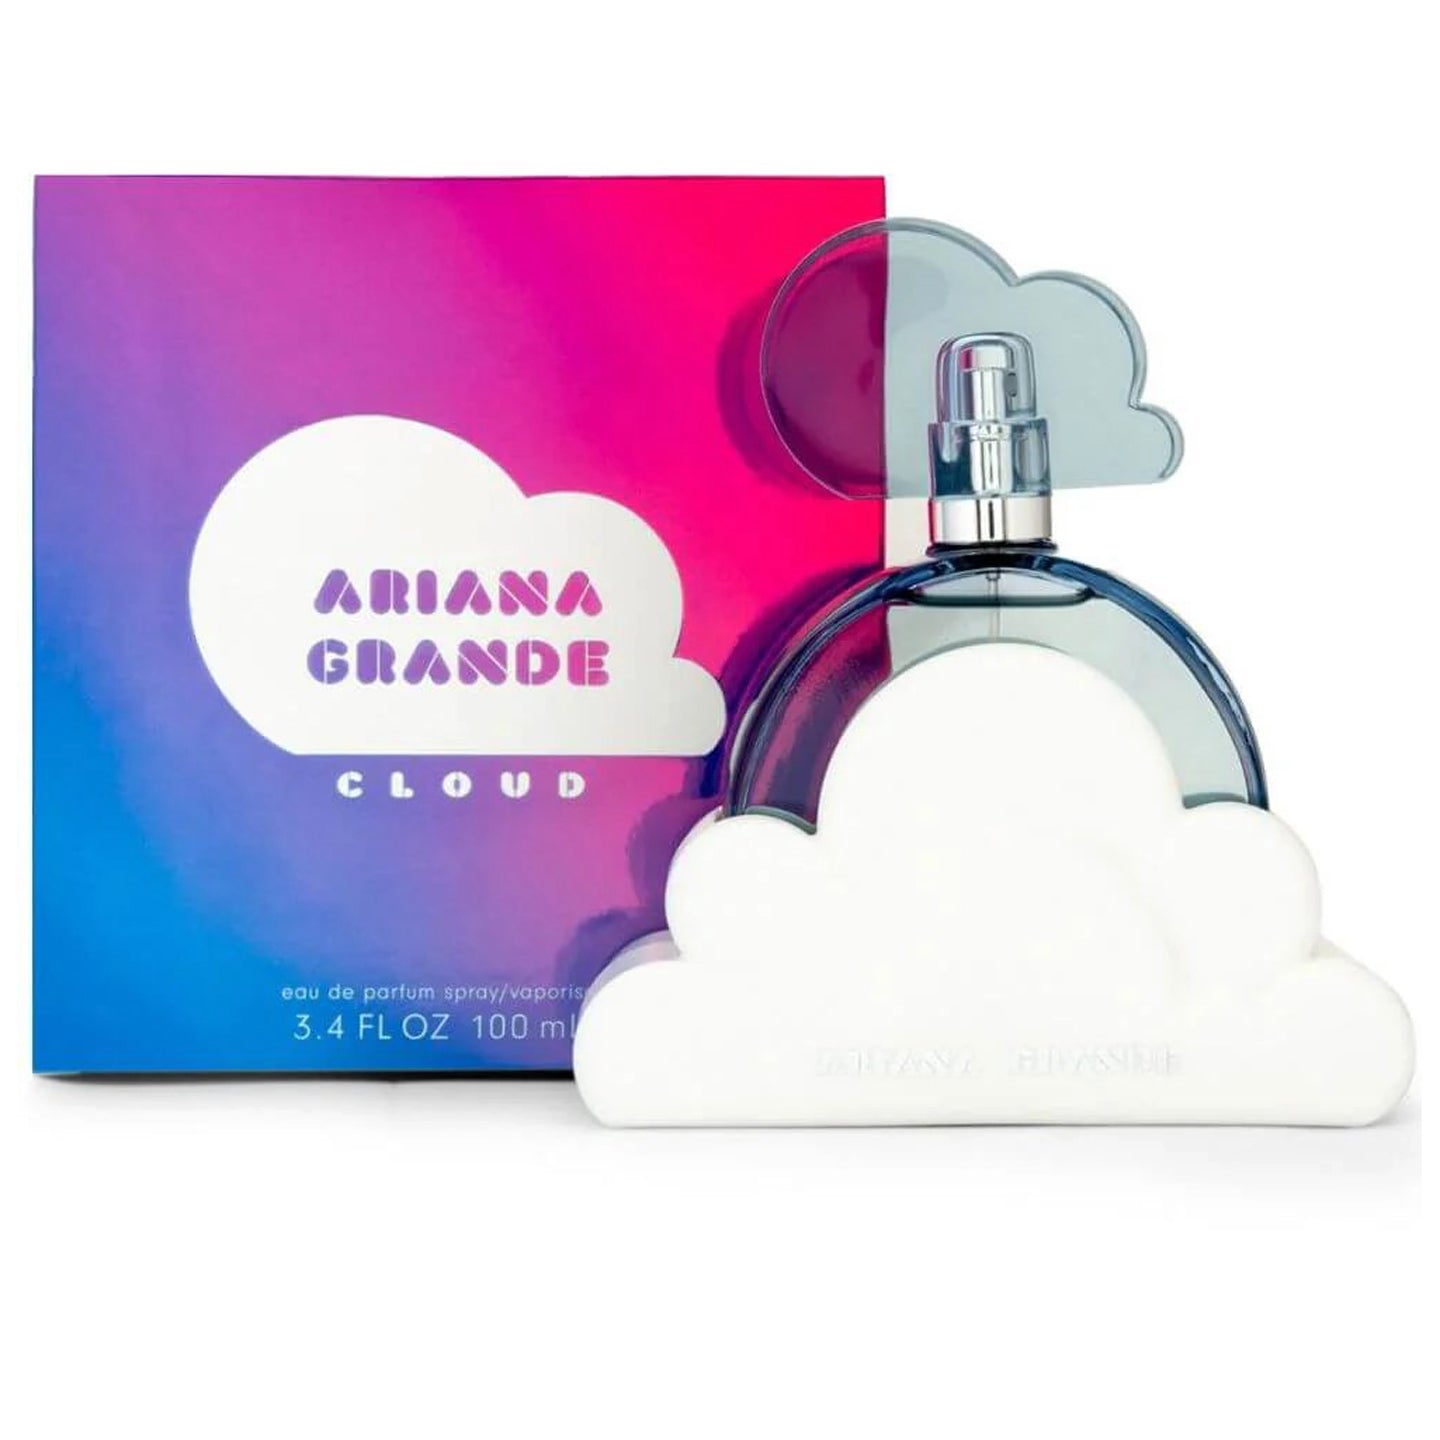 Ariana Grande Cloud Eau de Parfum Spray 100 ml for Women